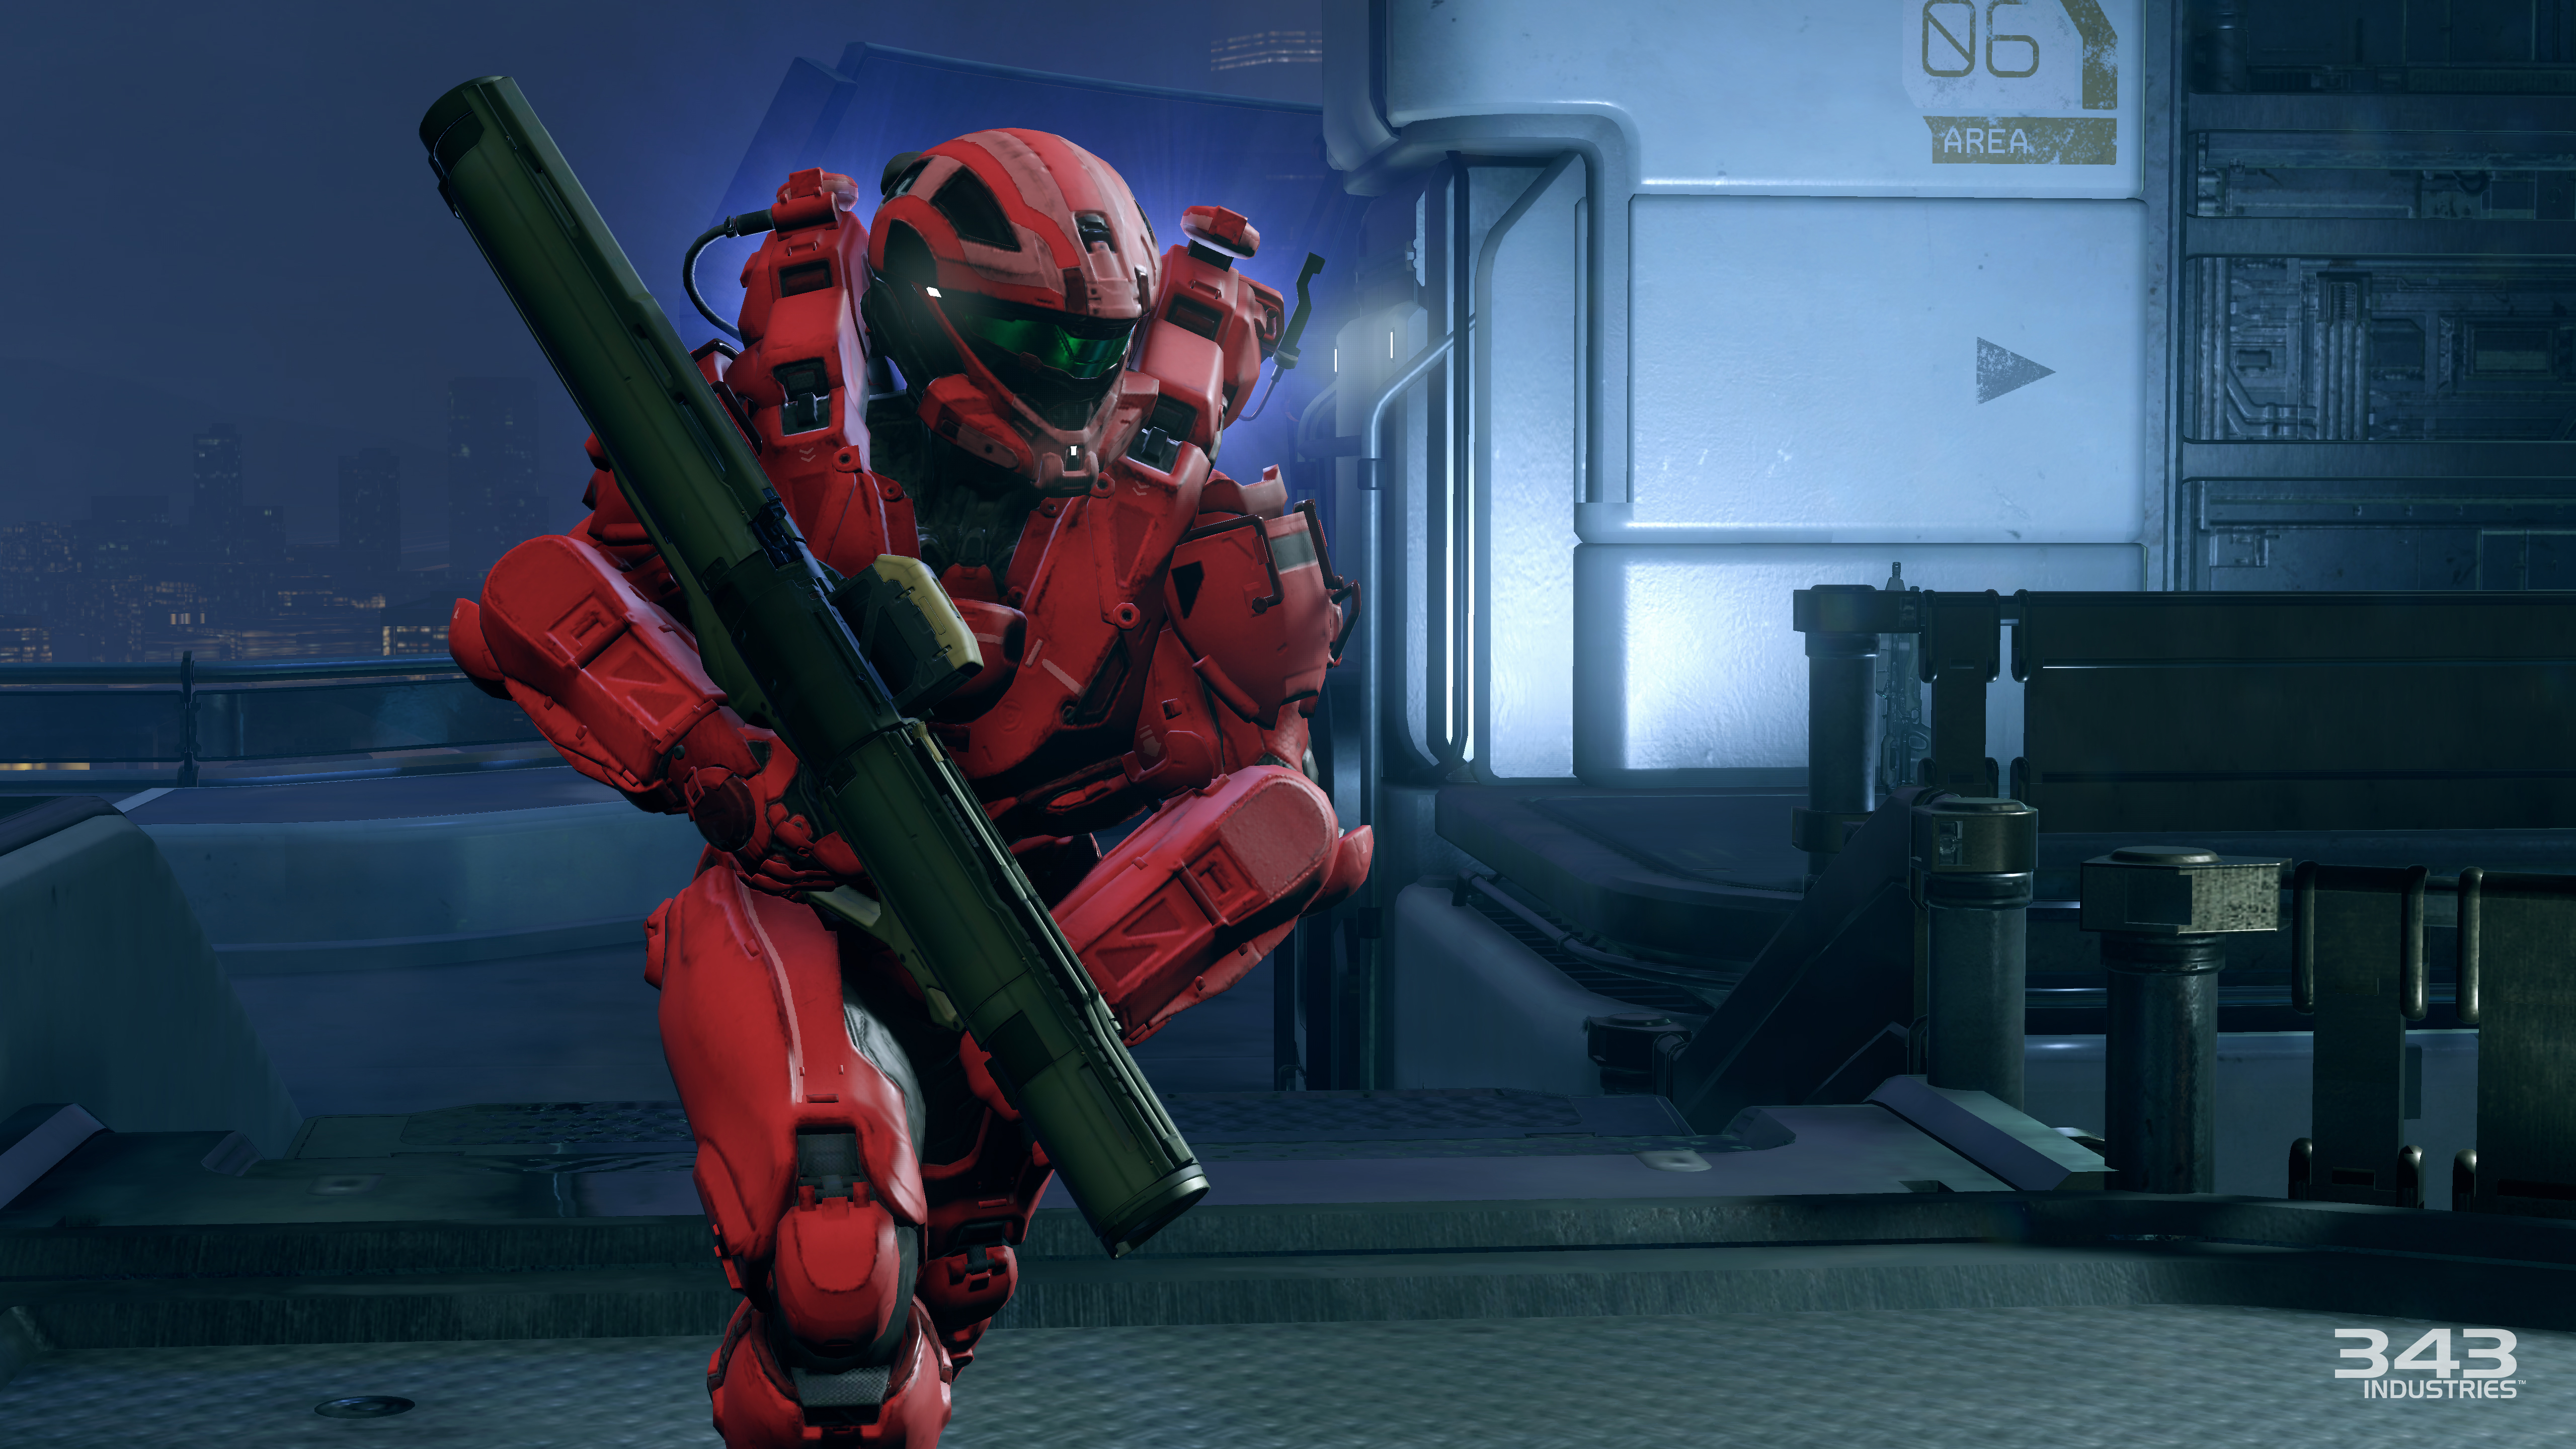 Скачать обои бесплатно Видеоигры, Гало, Halo 5: Стражи картинка на рабочий стол ПК